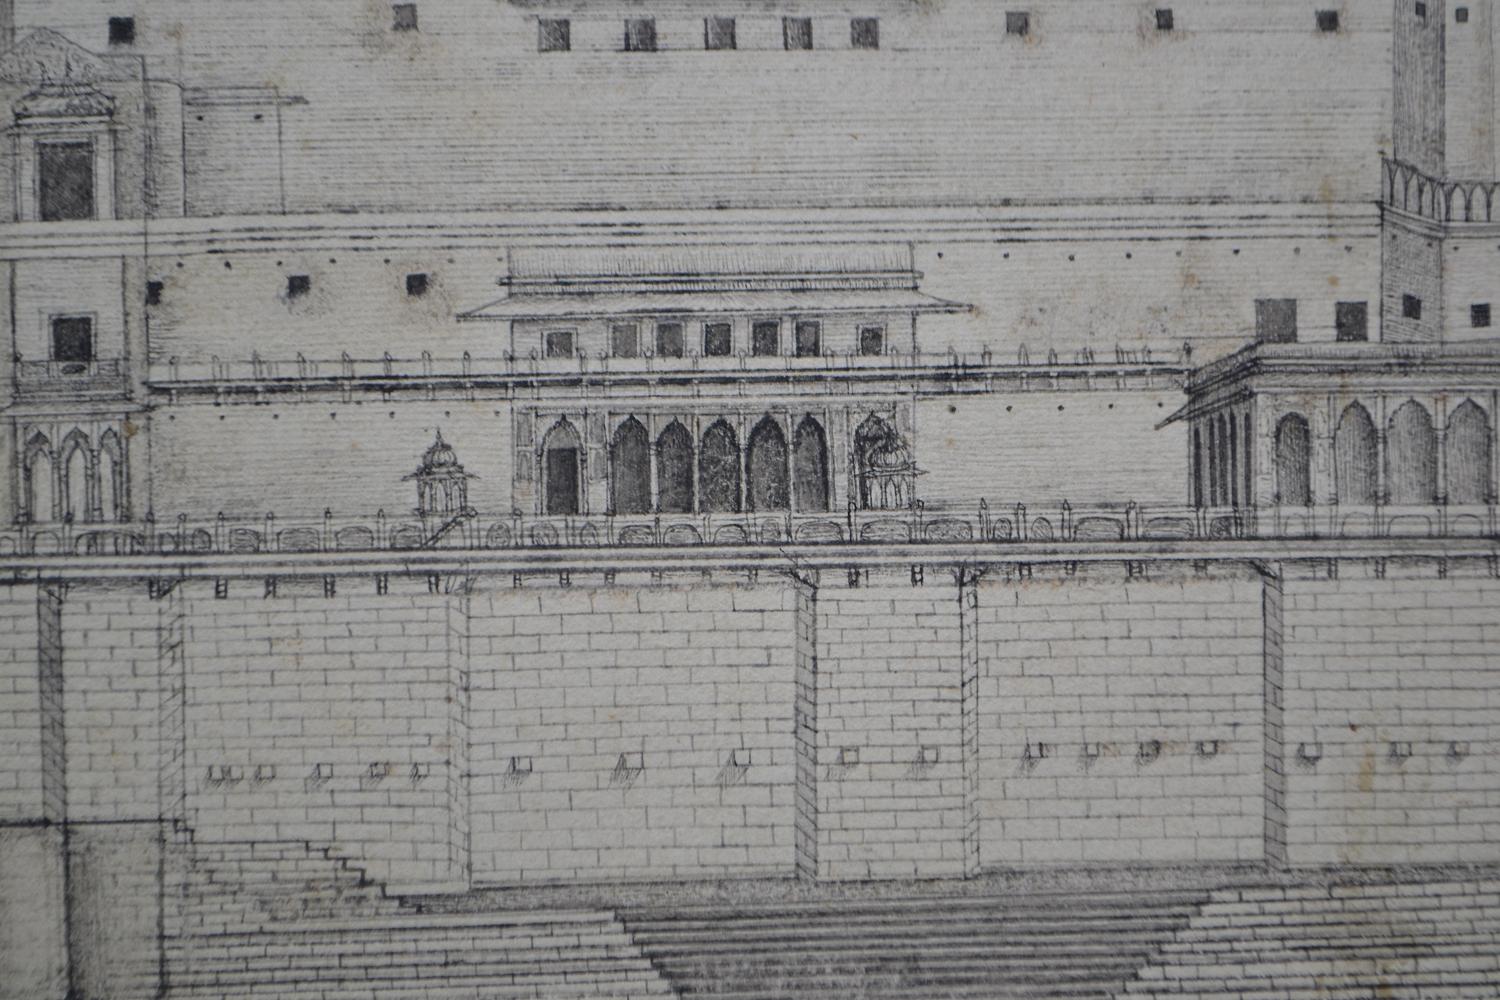 Ramnagar Fort, Indien, Company School, Bleistift und Tinte, spätes 18. Jahrhundert (Englische Schule), Art, von Unknown